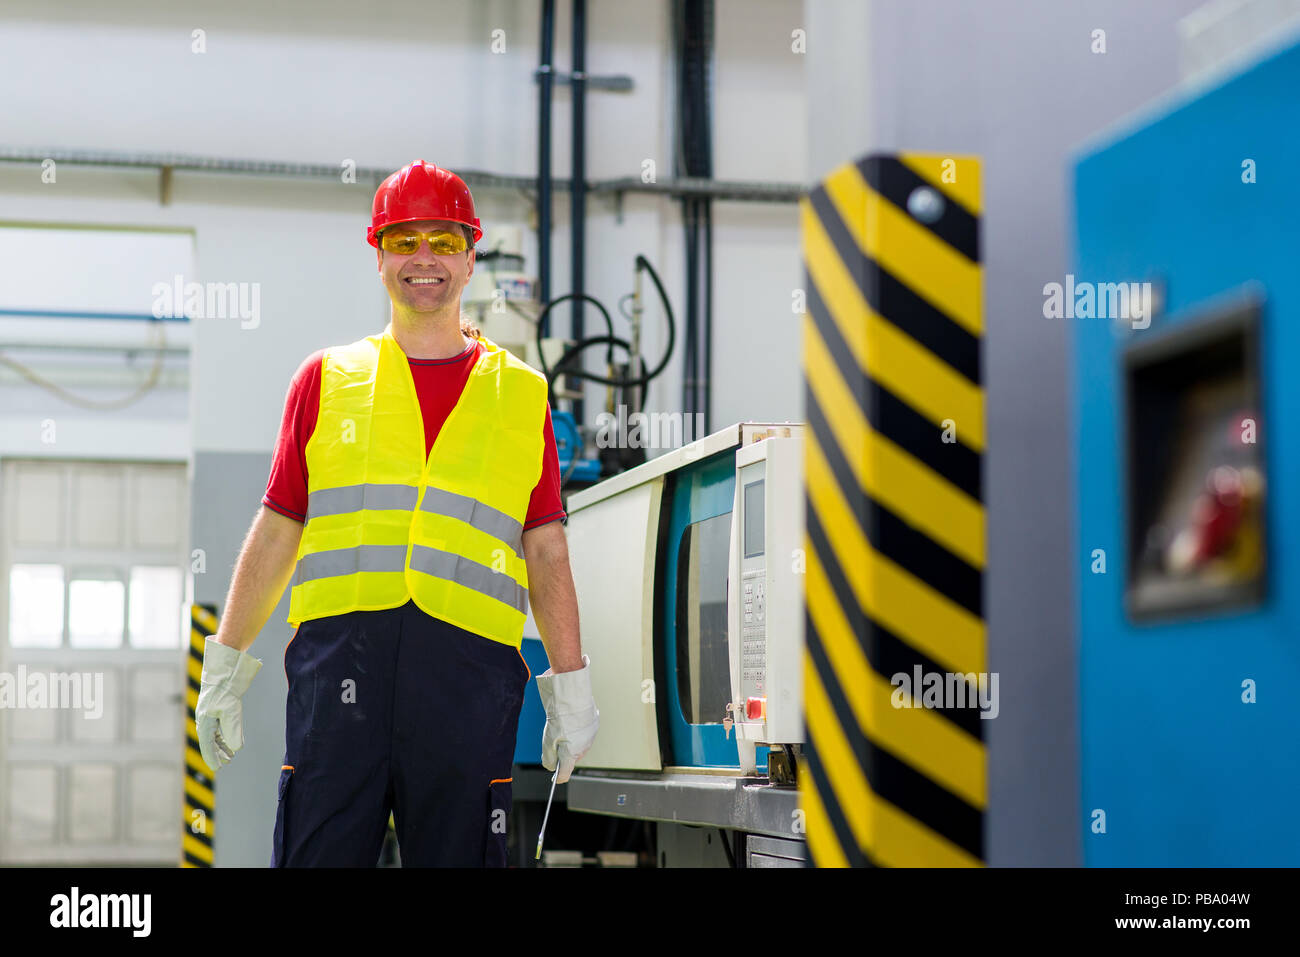 Arbeiter, lächelnd und mit Blick auf eine Kamera stand neben einer Fabrik. Arbeitnehmer tragen Schutzkleidung. Stockfoto